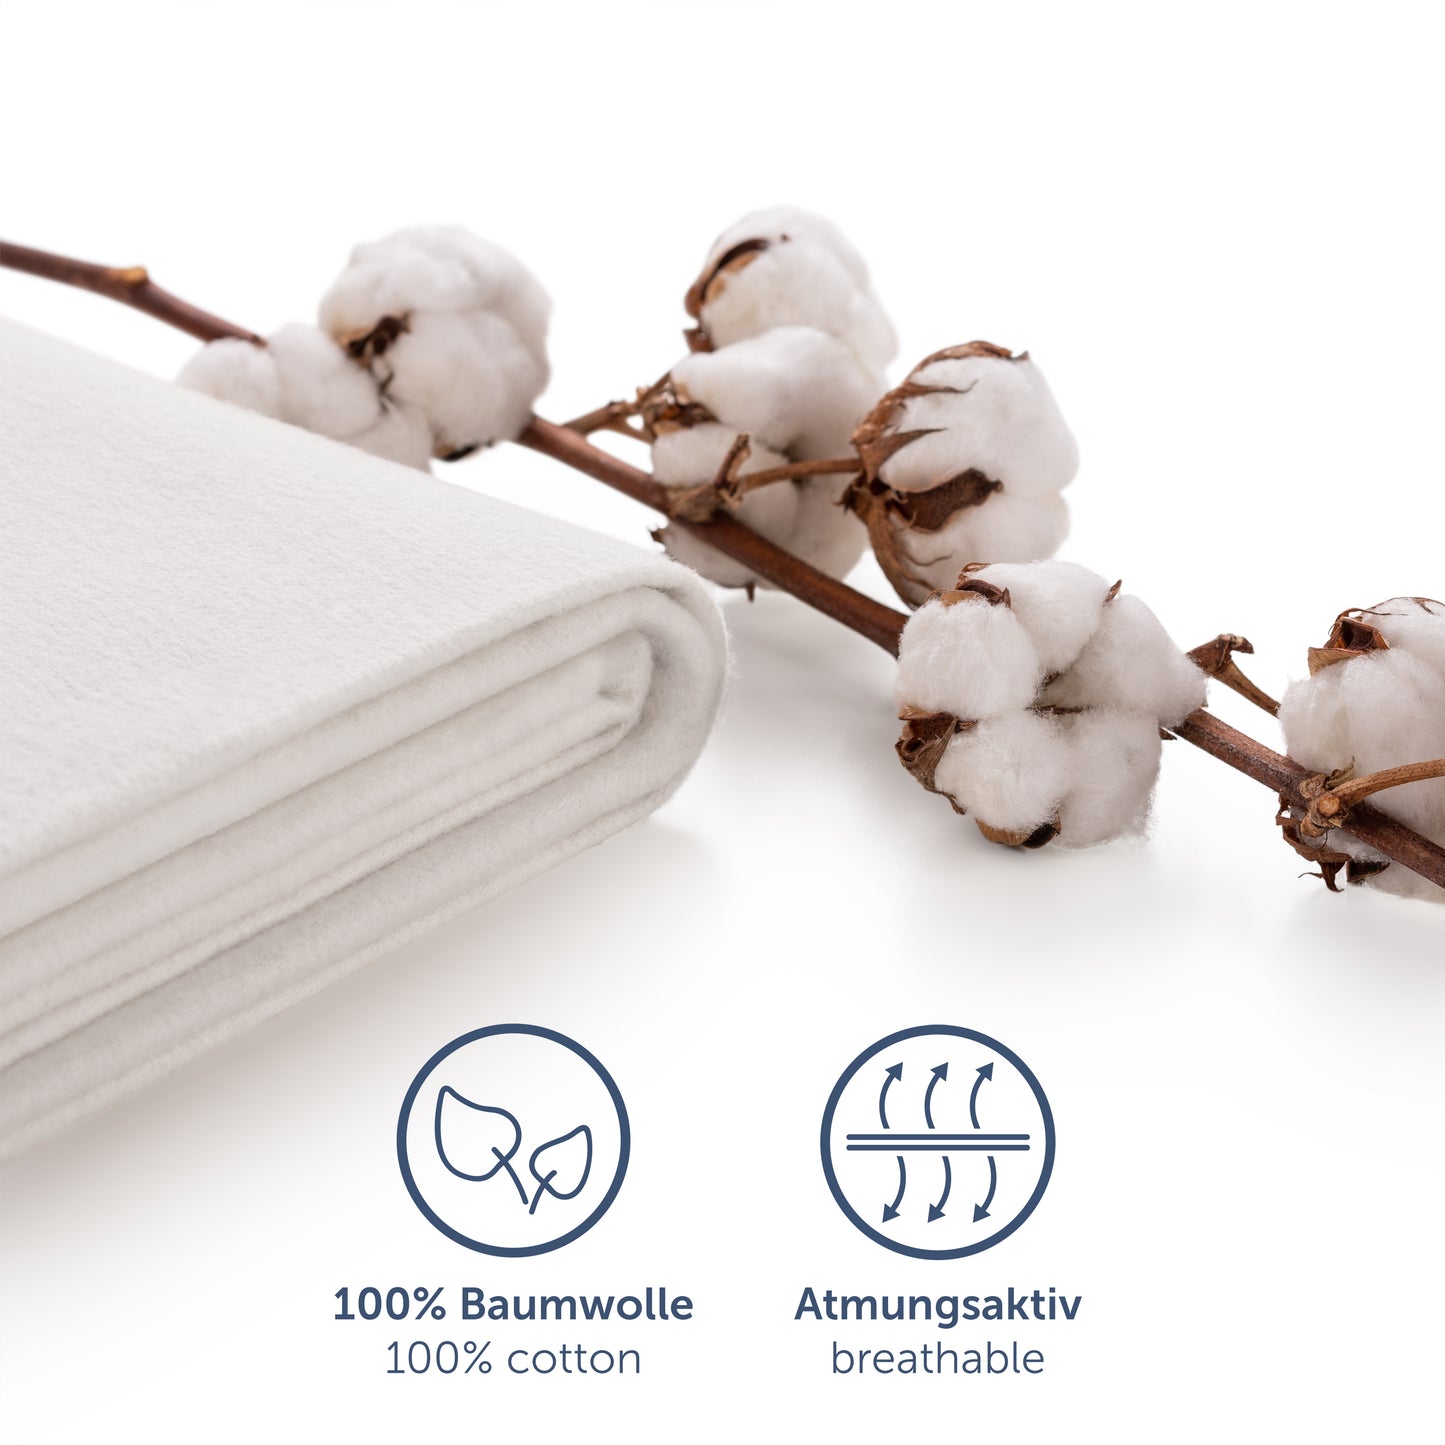 Matratzenschoner MAX aus 100% natürlicher Baumwolle, atmungsaktiv und Oeko-Tex Zertifiziert